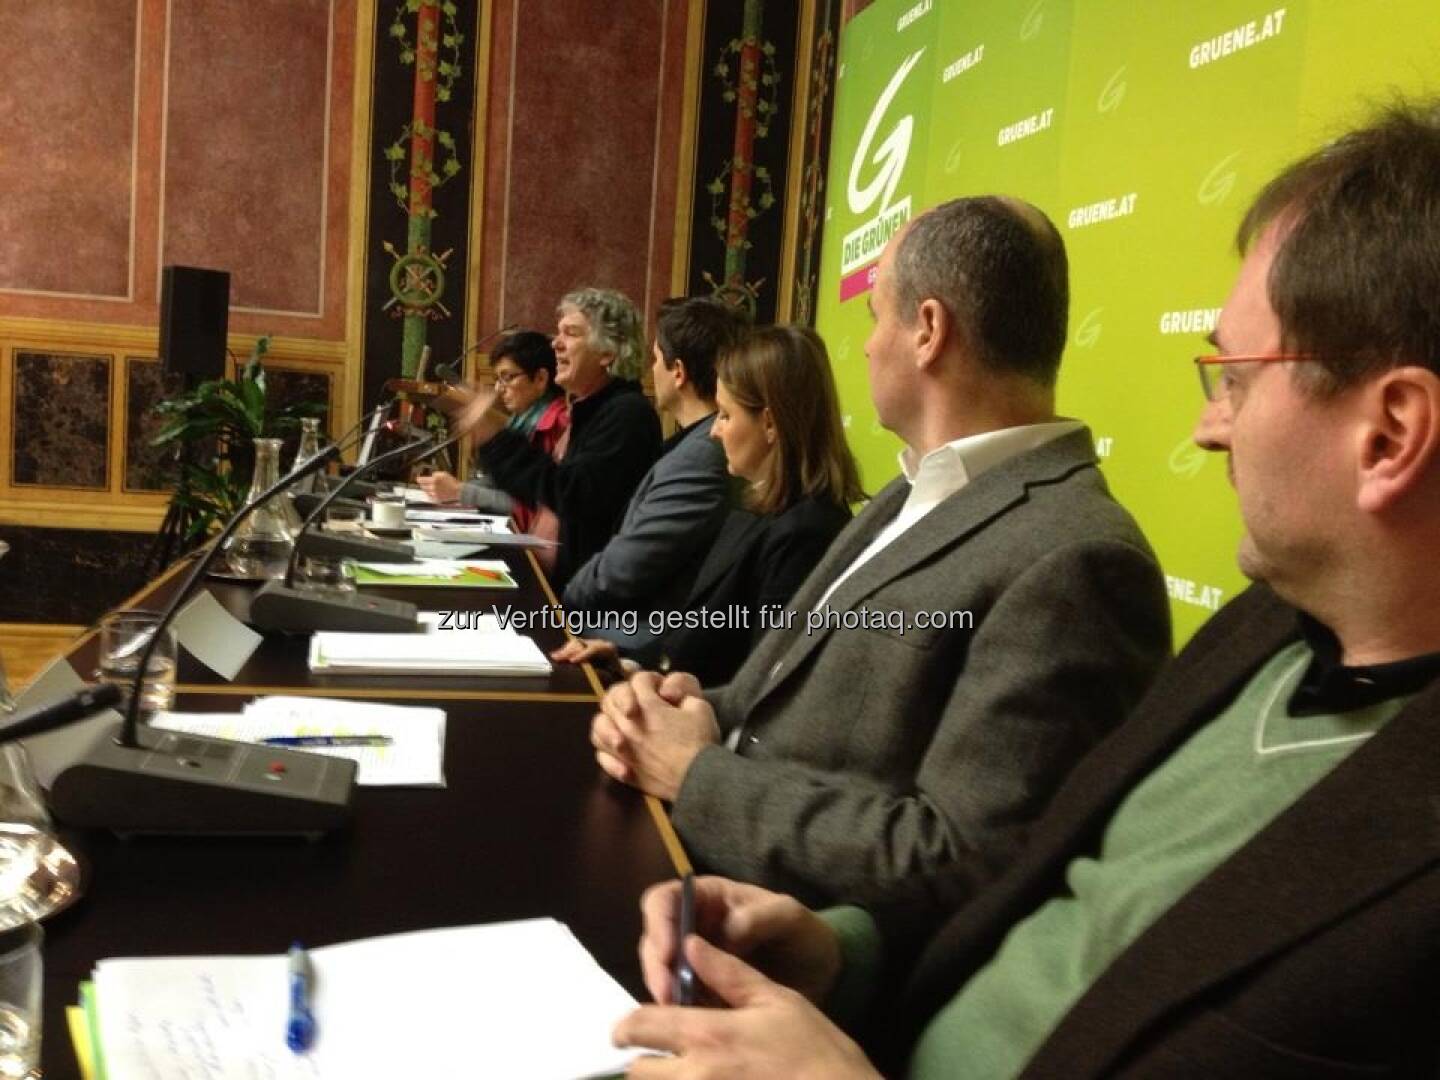 Parlaments-Enquete der Grünen zum Thema Crowd-Funding. Heini Staudinger spricht (mit freundlicher Genehmigung von Volker Plass)